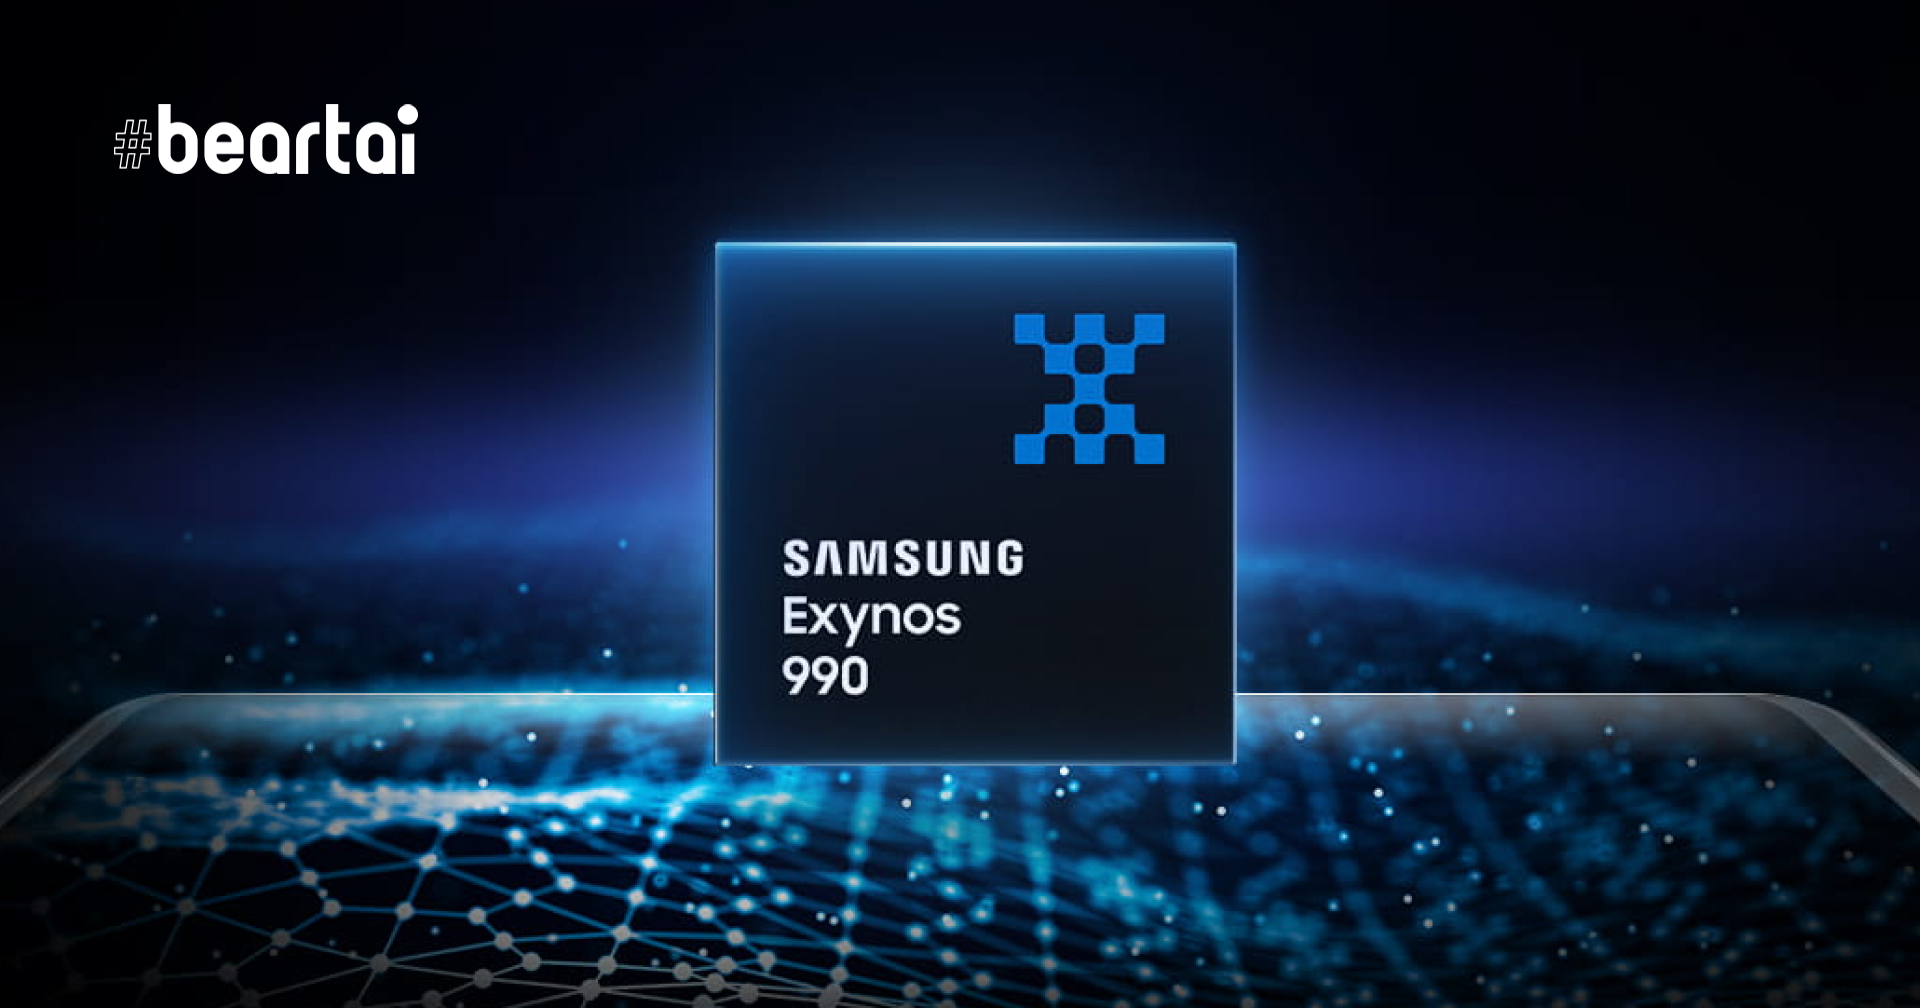 รอบนี้ Samsung ไม่ได้มาเล่นๆ พบข้อมูล Exynos 1000 ที่แรงกว่า Snapdragon 875!